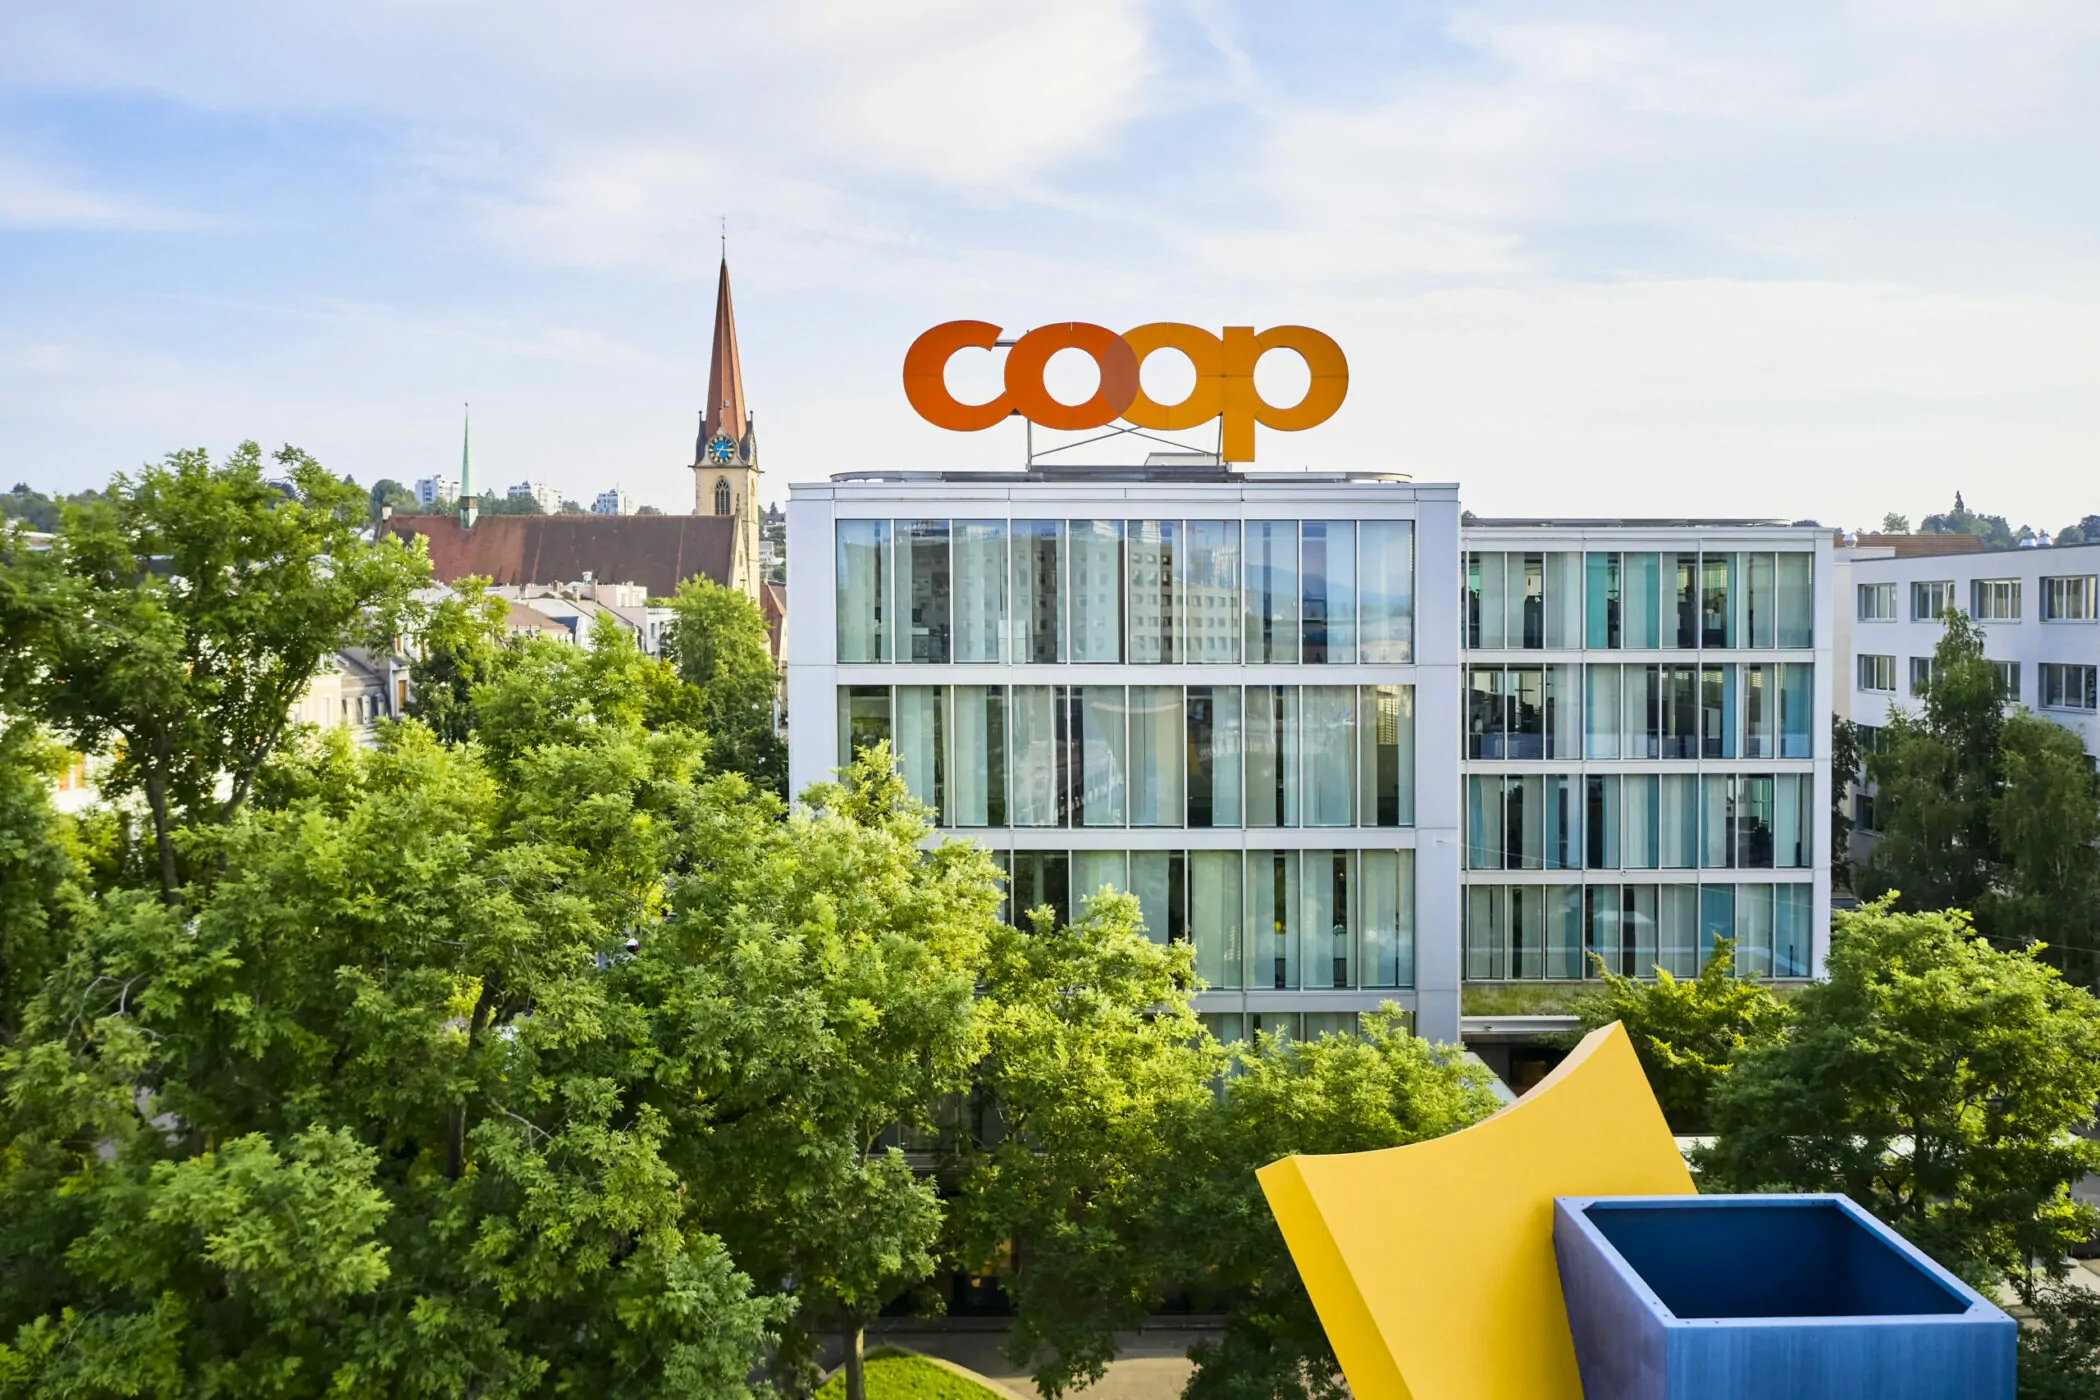 Bild vom Coop Hauptsitz und darauf ein großes Coop-Logo, Omnichannel Plattform